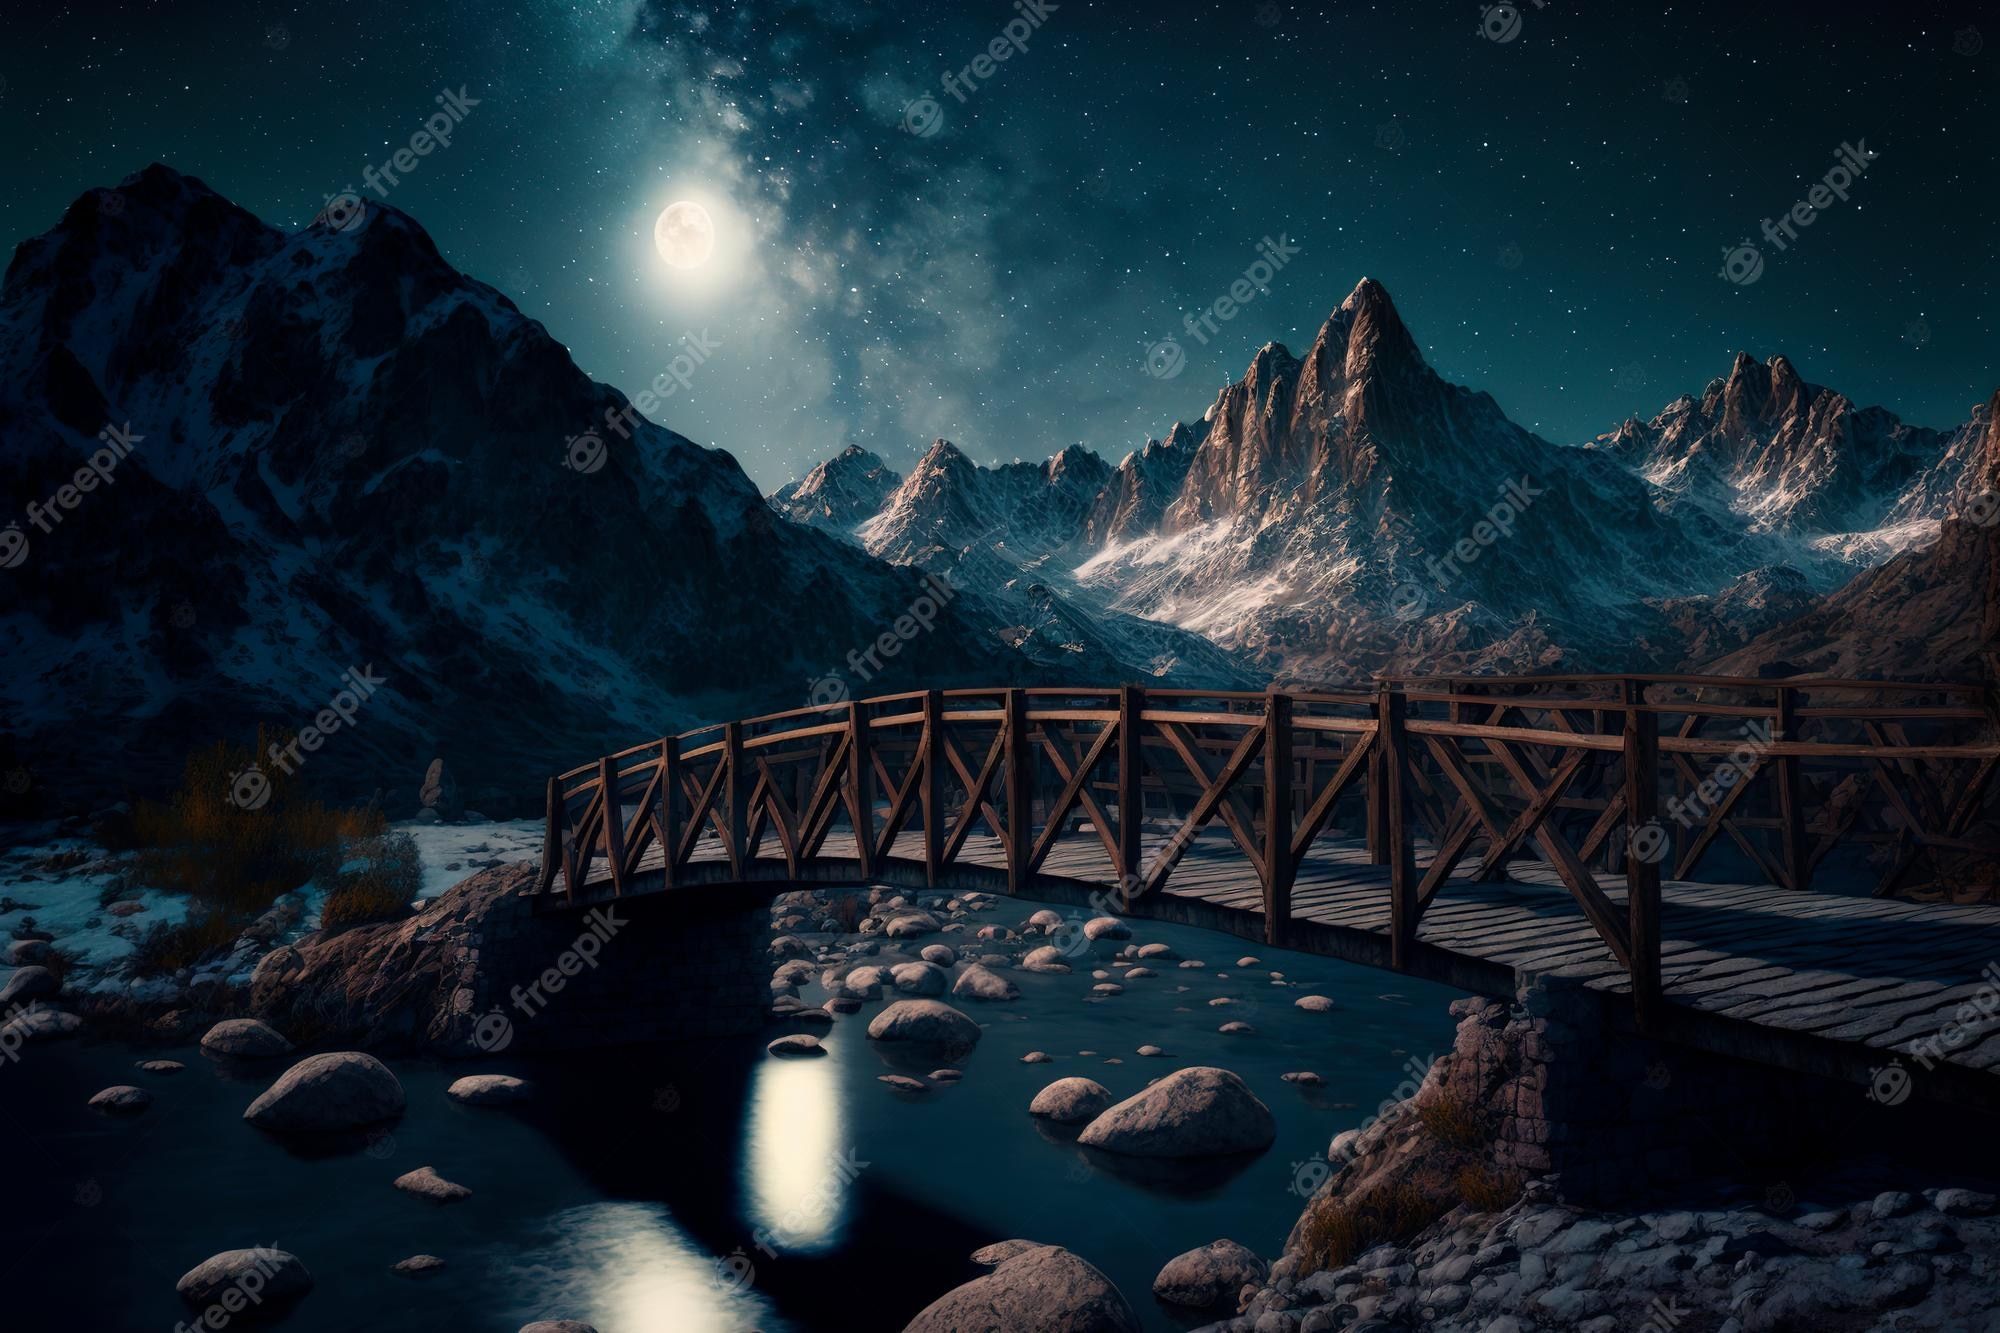  Brucke Hintergrundbild 2000x1333. Digitale kunst brücke über den fluss in den bergen vor dem hintergrund des sternenhimmels